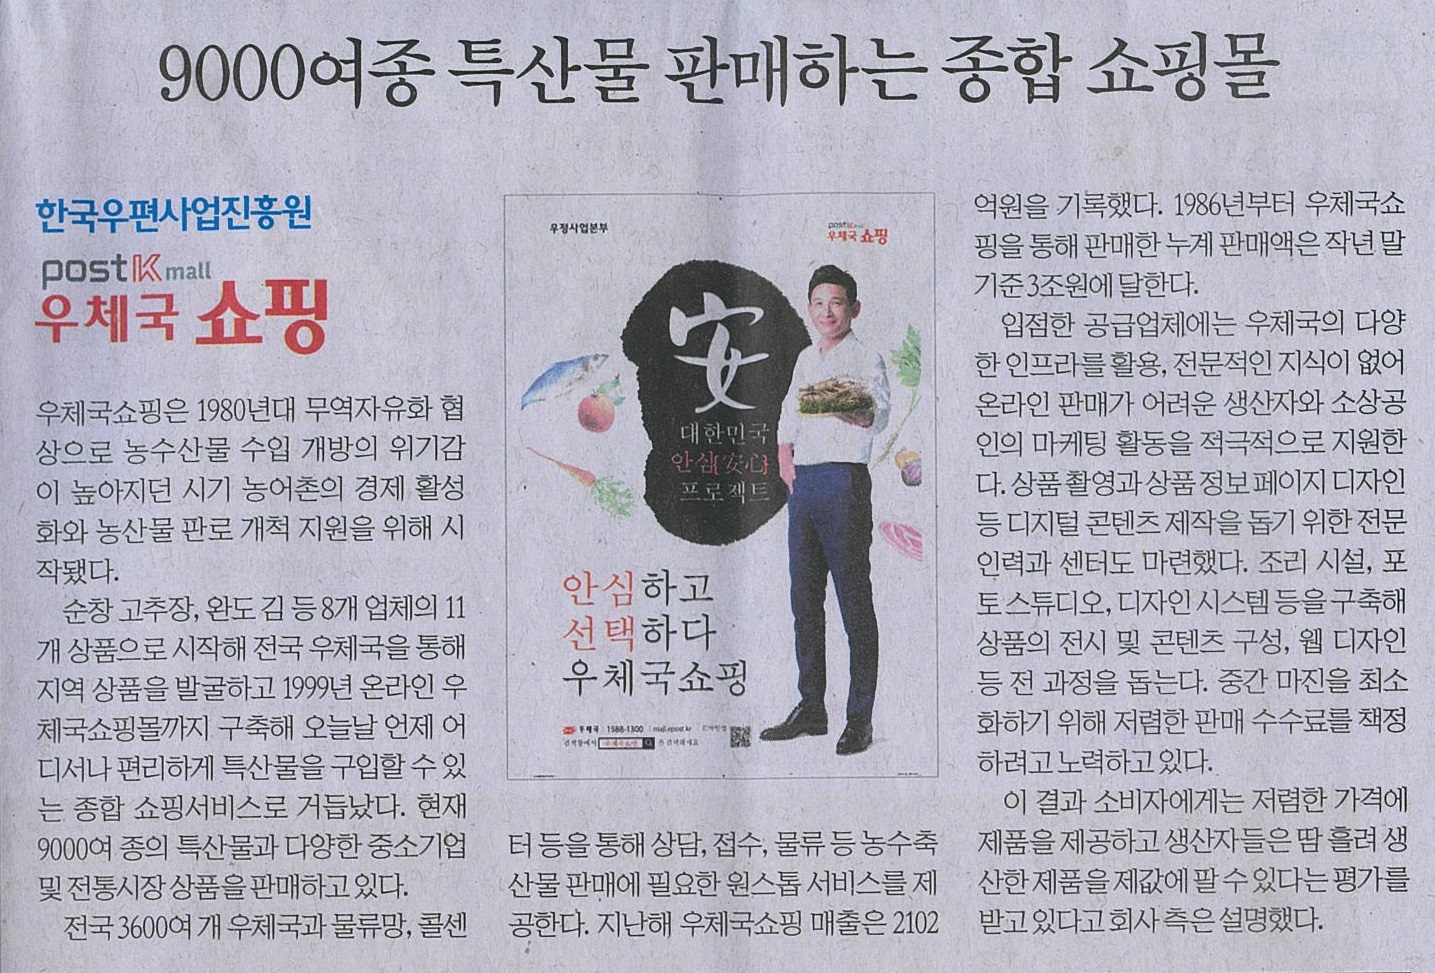 9000여종 특산물 판매하는 종합쇼핑몰 '우체국쇼핑'이 실린 신문